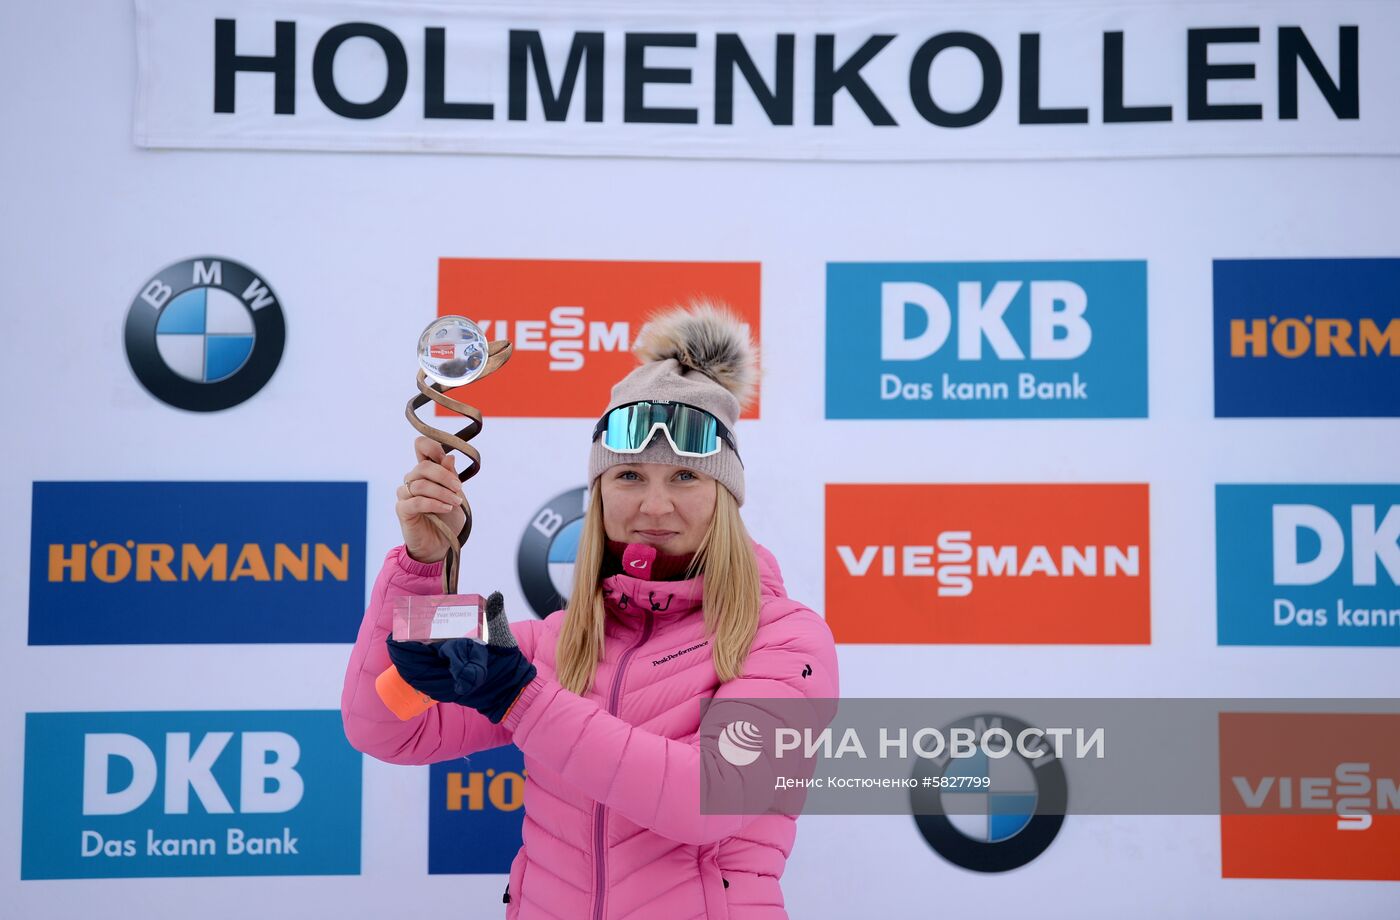 Биатлонистка Е.Павлова признана лучшим новичком сезона